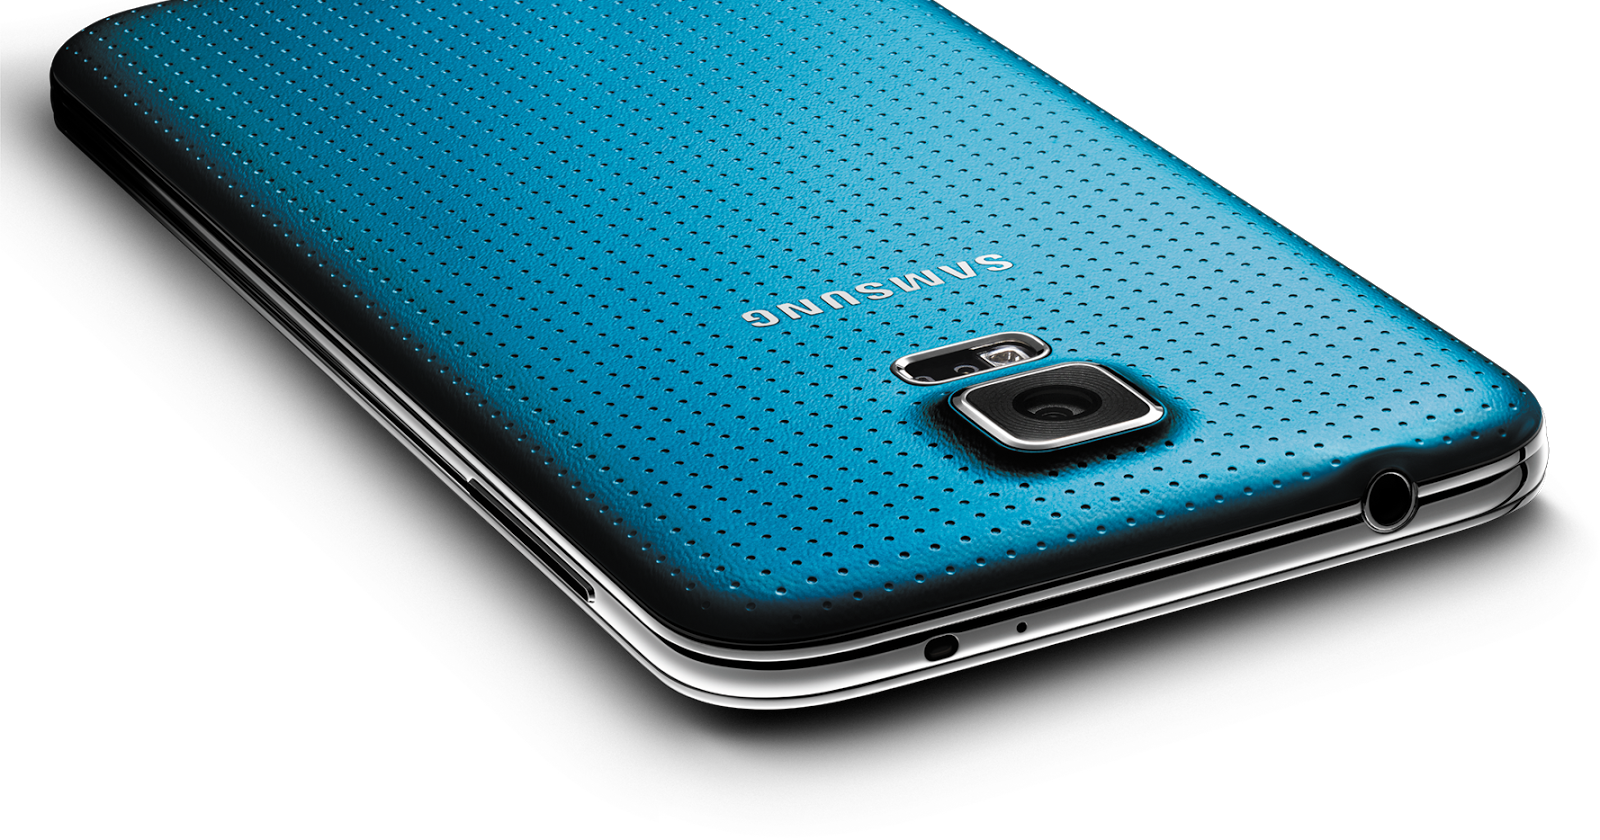 Samsung Galaxy S5 Plus Full Spesifikasi & Review (Kelebihan, Kekurangan dan Harga)